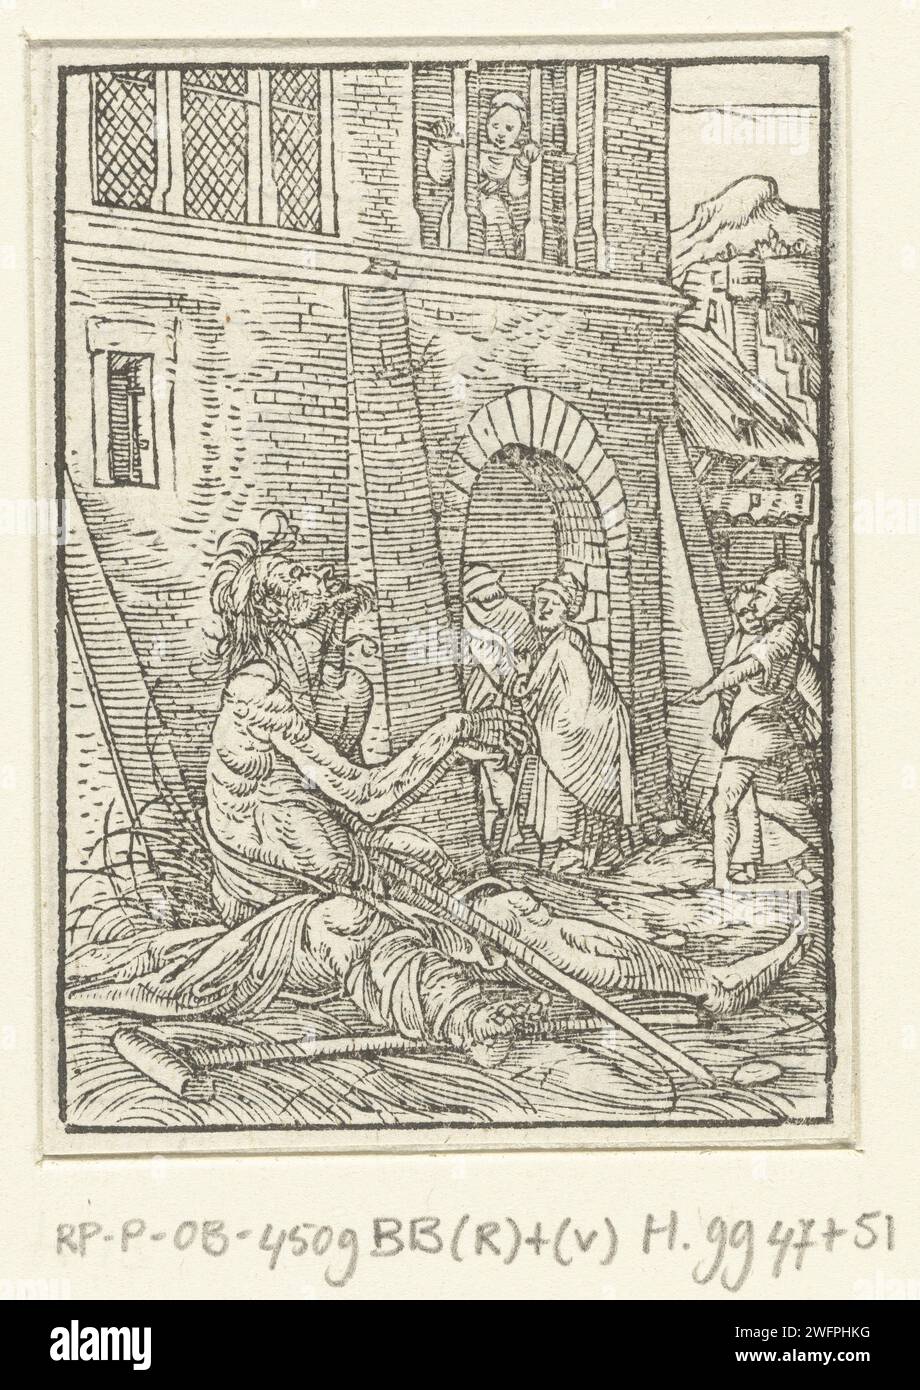 Beganting Sick man for a City Gate, Hans Holbein (II) (möglich), 1547 Print ein untreppter kranker Mann bettelt an einem Stadttor, er sitzt auf dem Boden, während Menschen an ihm vorbeigehen und durch das Tor gehen. Es ist bemerkenswert, dass der Tod nicht auf diesem Bild dargestellt wurde, während es Teil der Serie von Buchillustrationen der Doddans ist. Am Rand über dem Ausdruck befindet sich der Text ROM VII Papierperson mit körperlicher Behinderung. Tanz des Todes; Tod zusammen mit einem oder mehreren Menschen. Bettler. Krücken Stockfoto